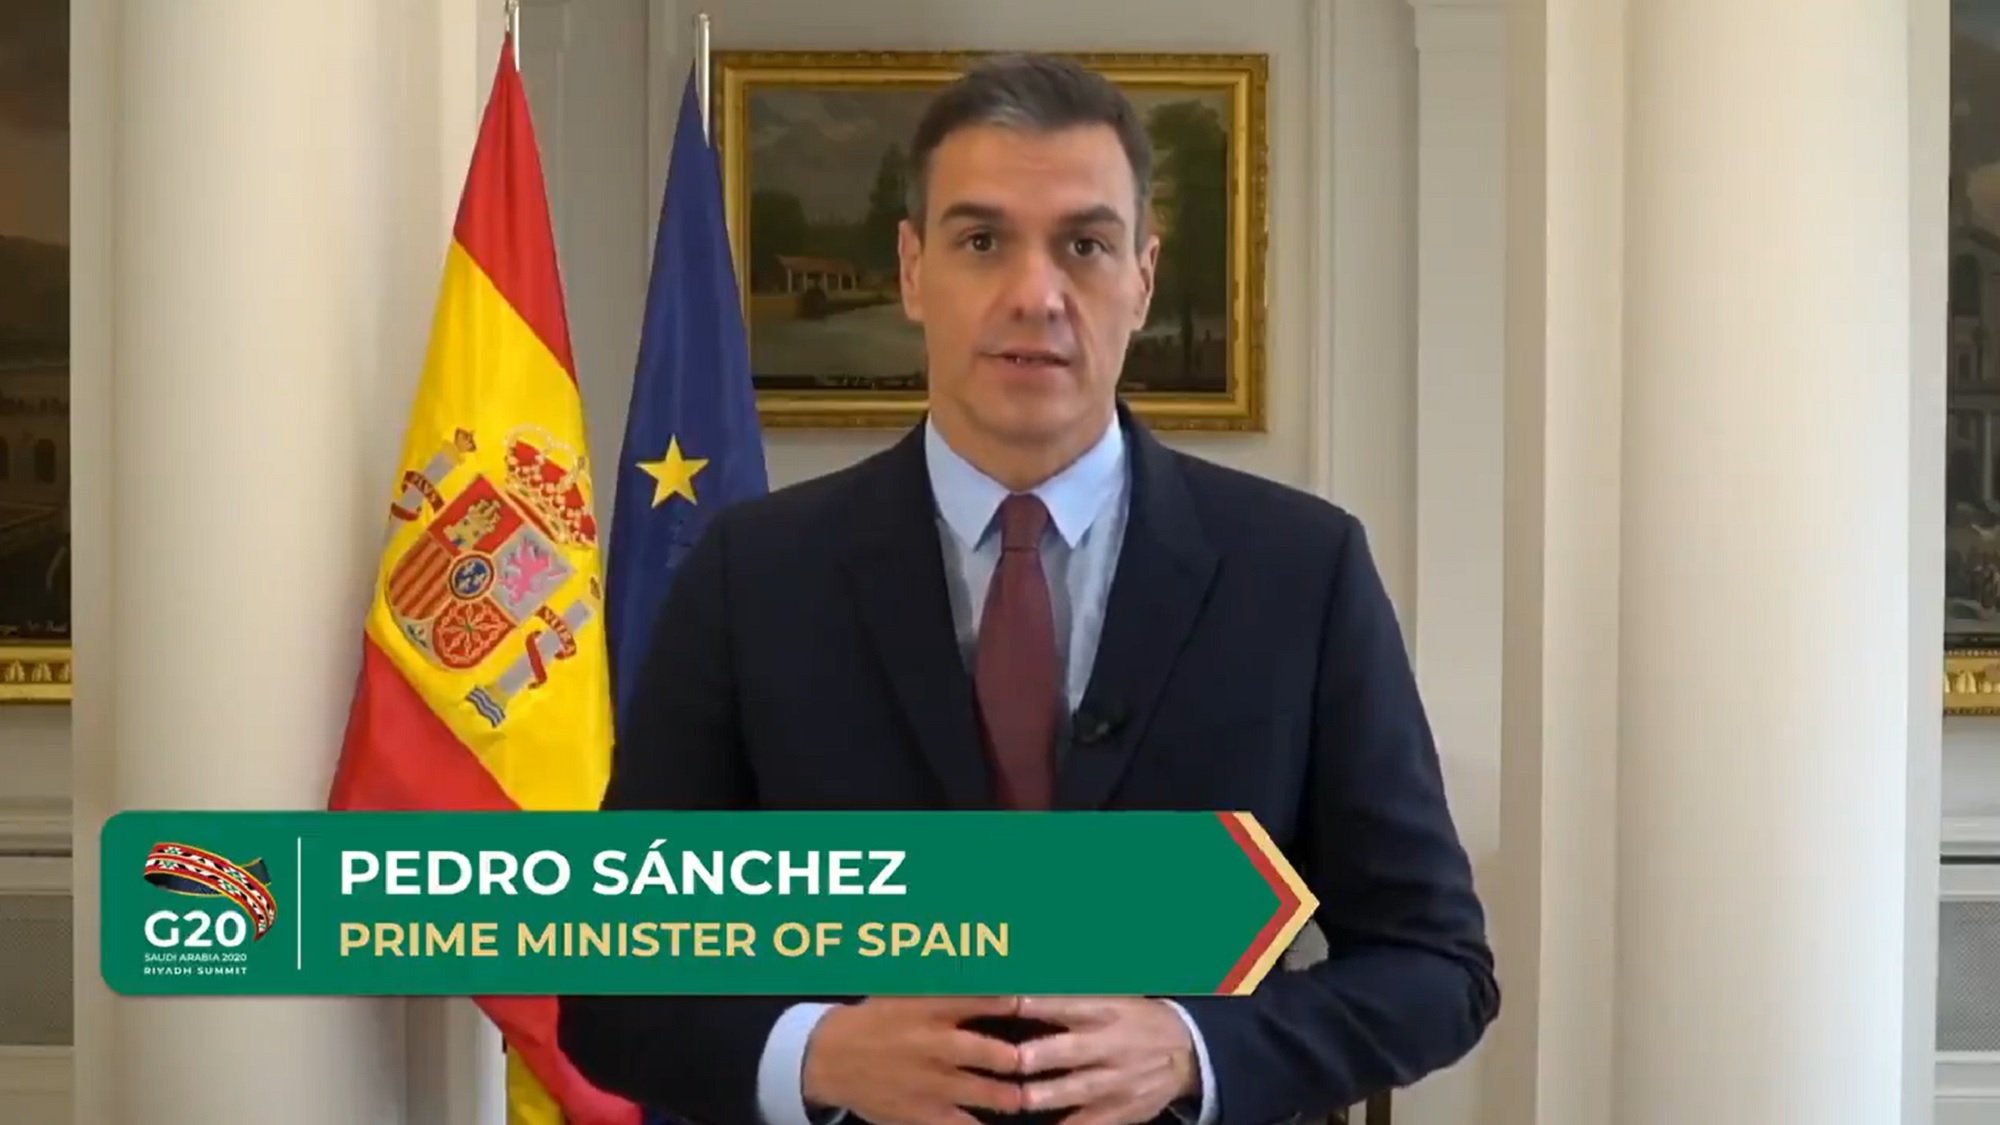 Creus que Pedro Sánchez és qui mana a Espanya?